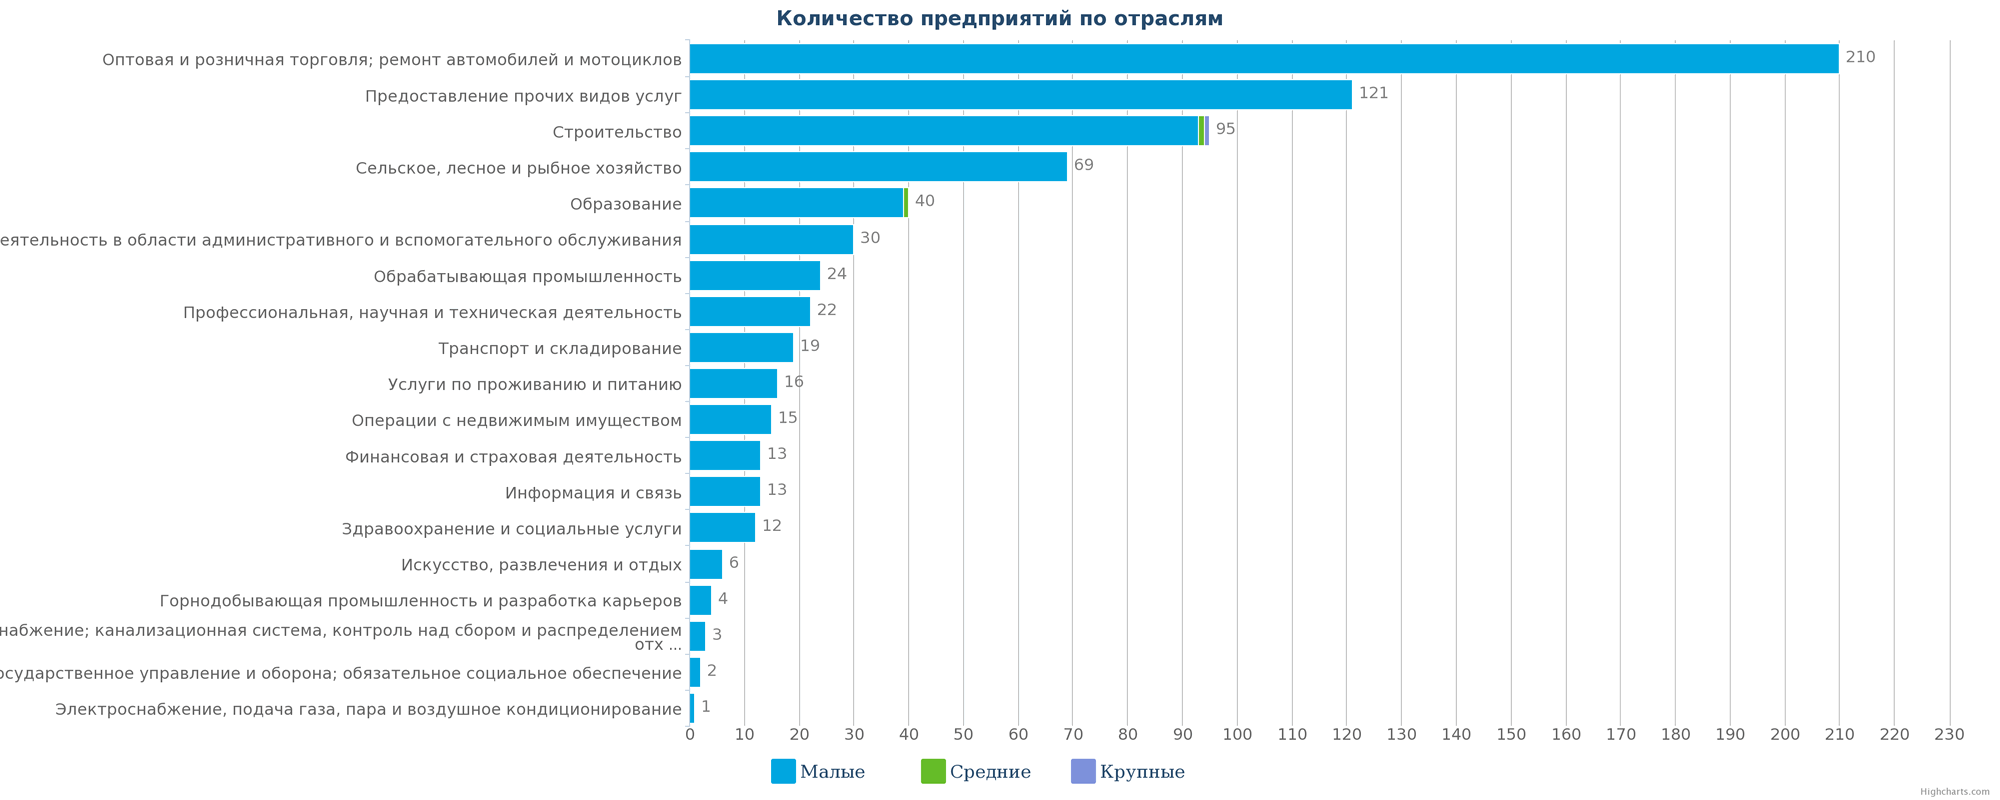 Новые компании в каталоге Казахстана